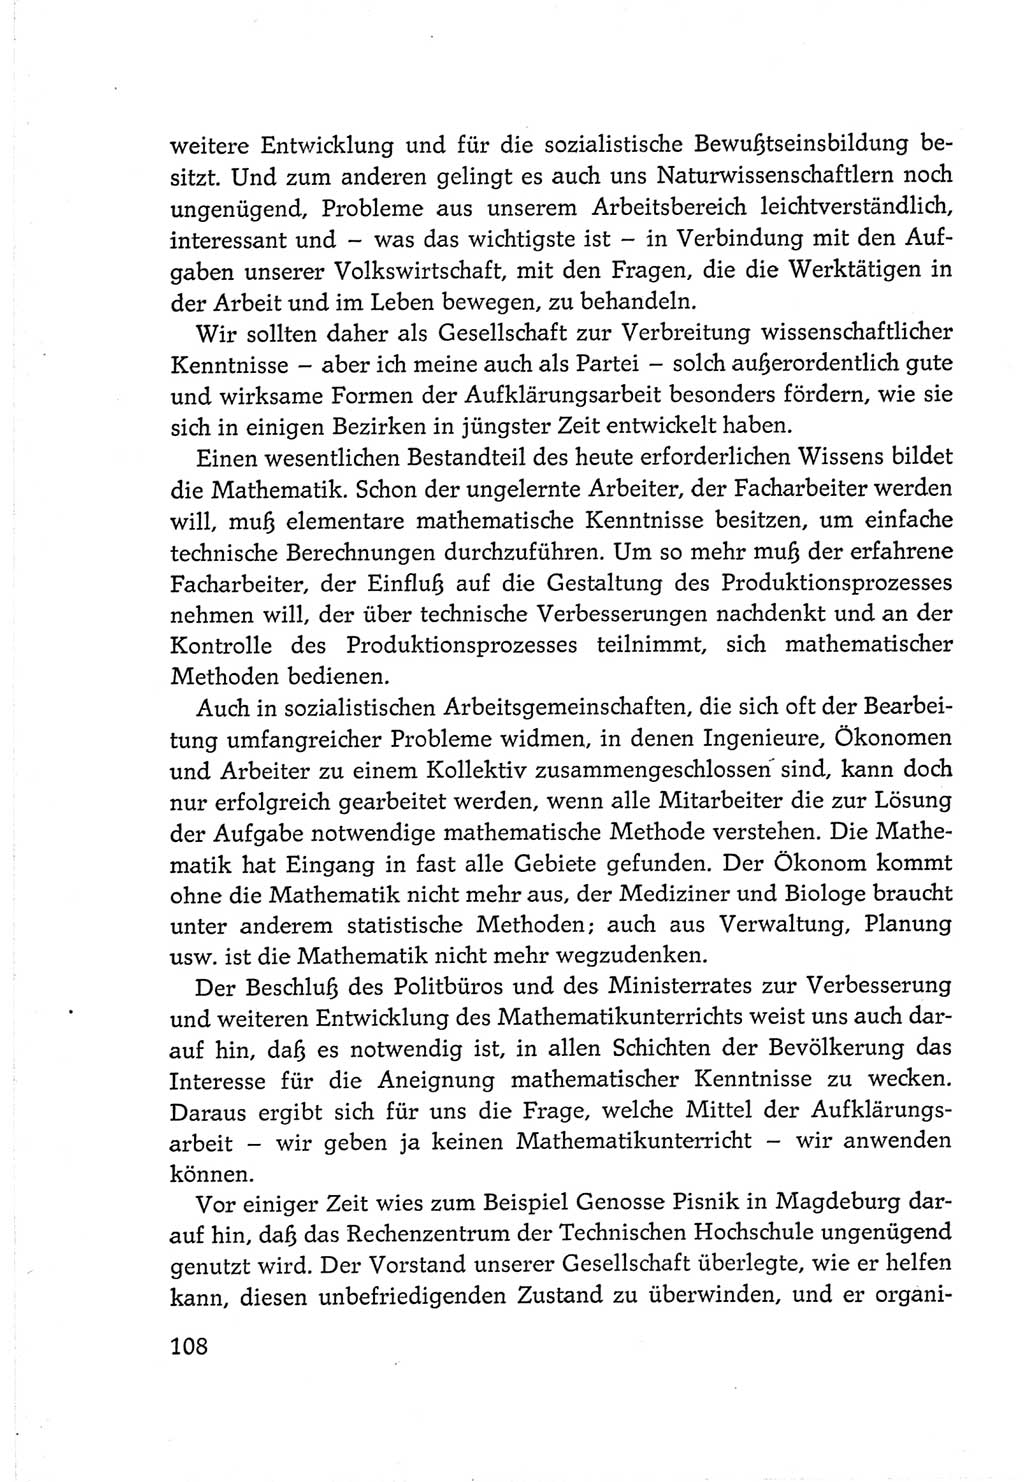 Protokoll der Verhandlungen des Ⅵ. Parteitages der Sozialistischen Einheitspartei Deutschlands (SED) [Deutsche Demokratische Republik (DDR)] 1963, Band Ⅲ, Seite 108 (Prot. Verh. Ⅵ. PT SED DDR 1963, Bd. Ⅲ, S. 108)